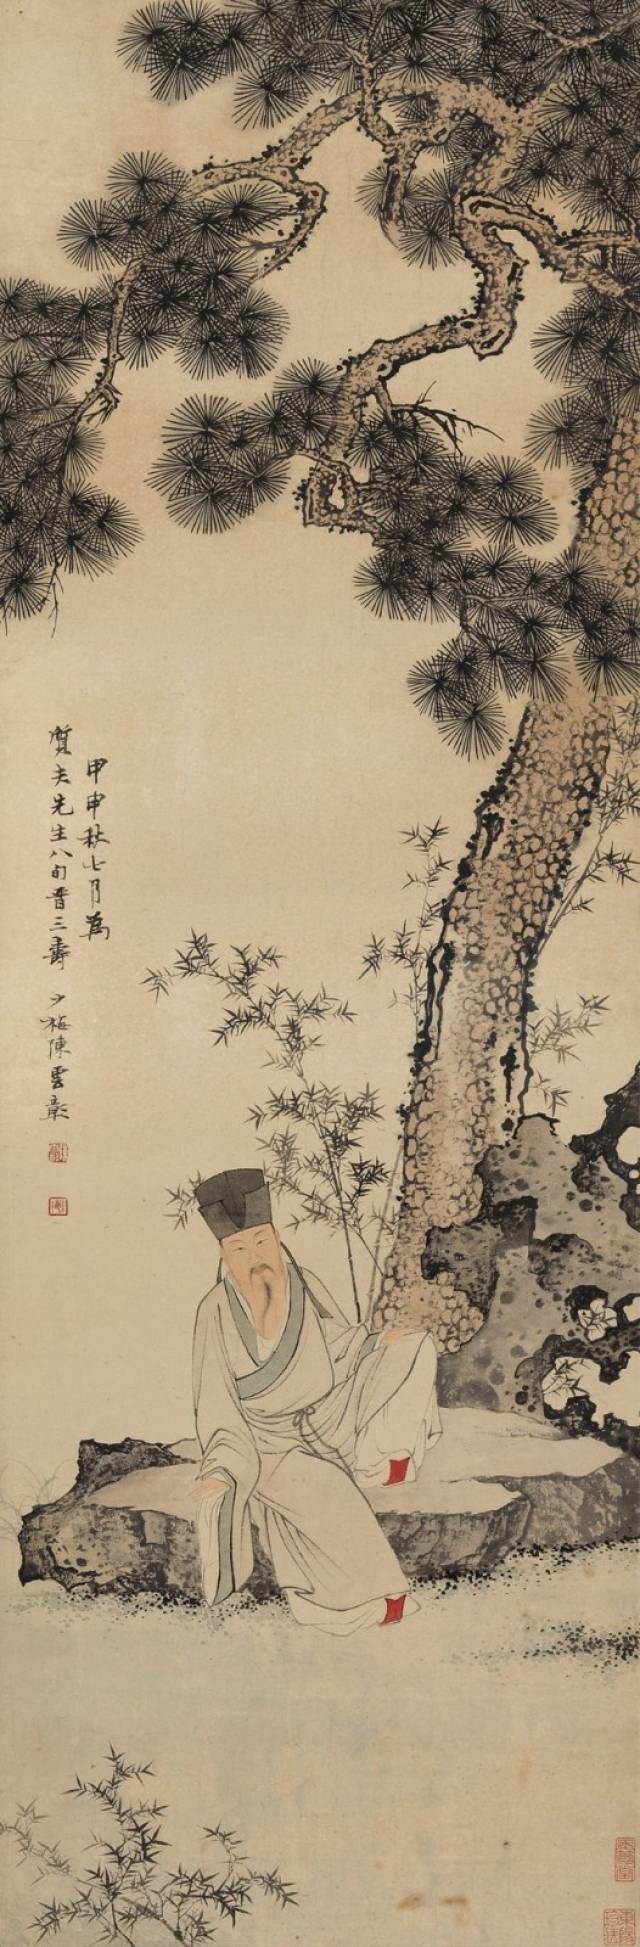 陈少梅丨英年早逝的天才画家